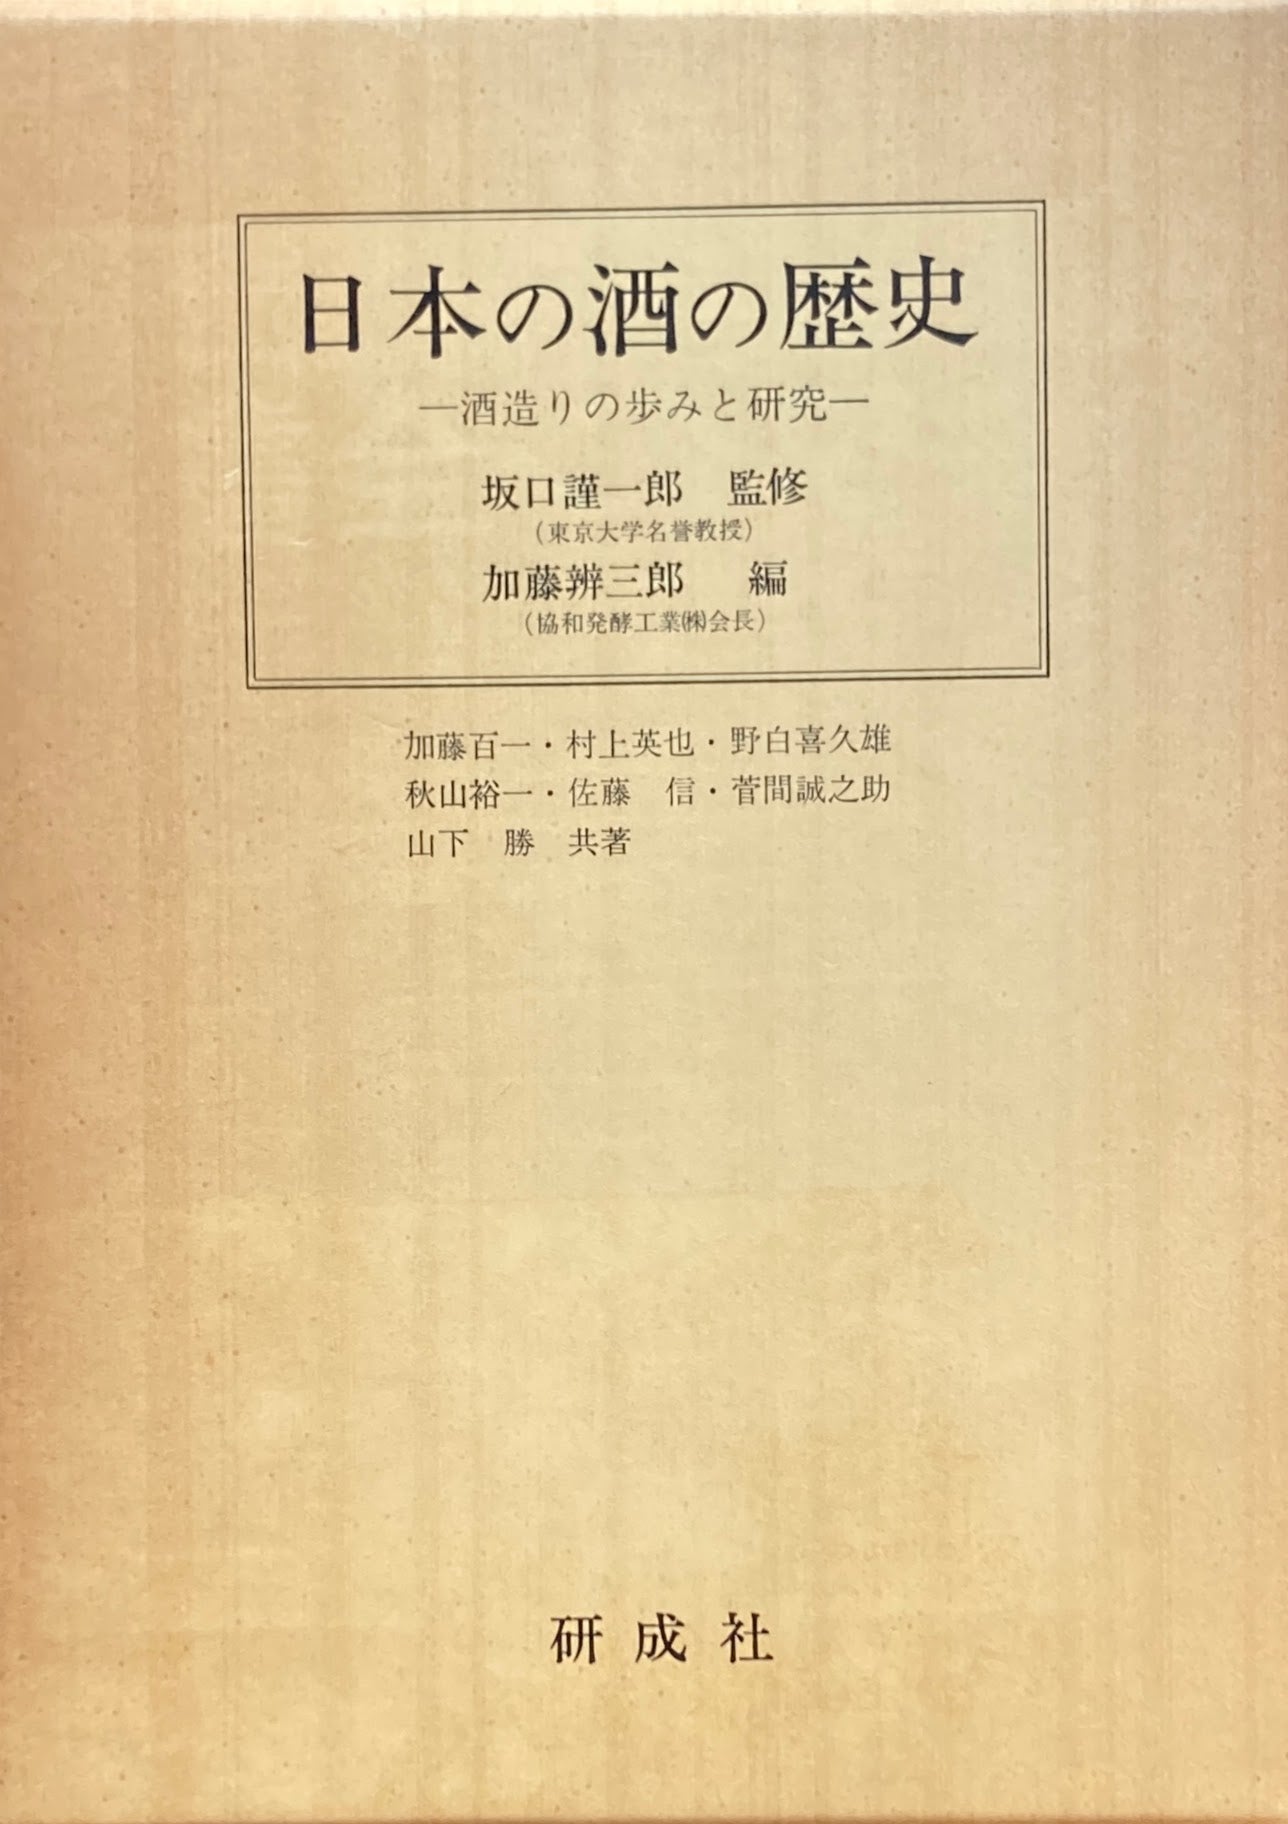 日本の酒の歴史　酒造りの歩みと研究　坂口謹一郎